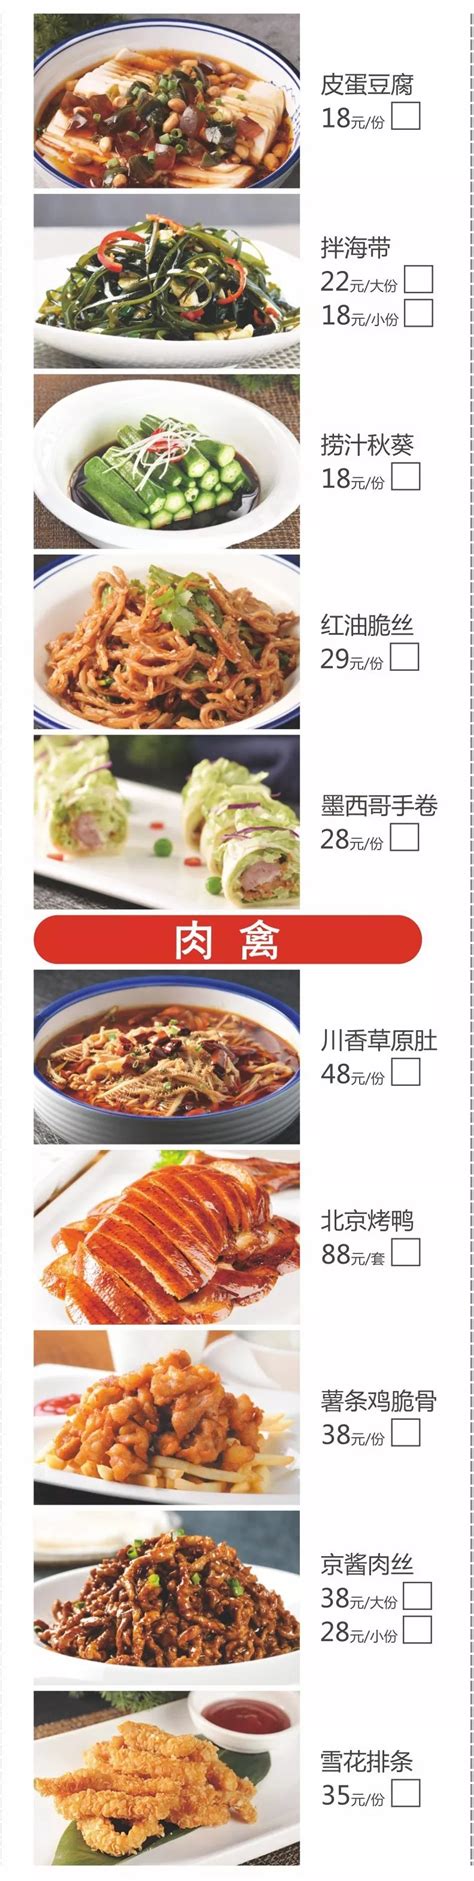 汕头北国饭店菜单、必点十道菜、价目表、招牌-掌上查询助手